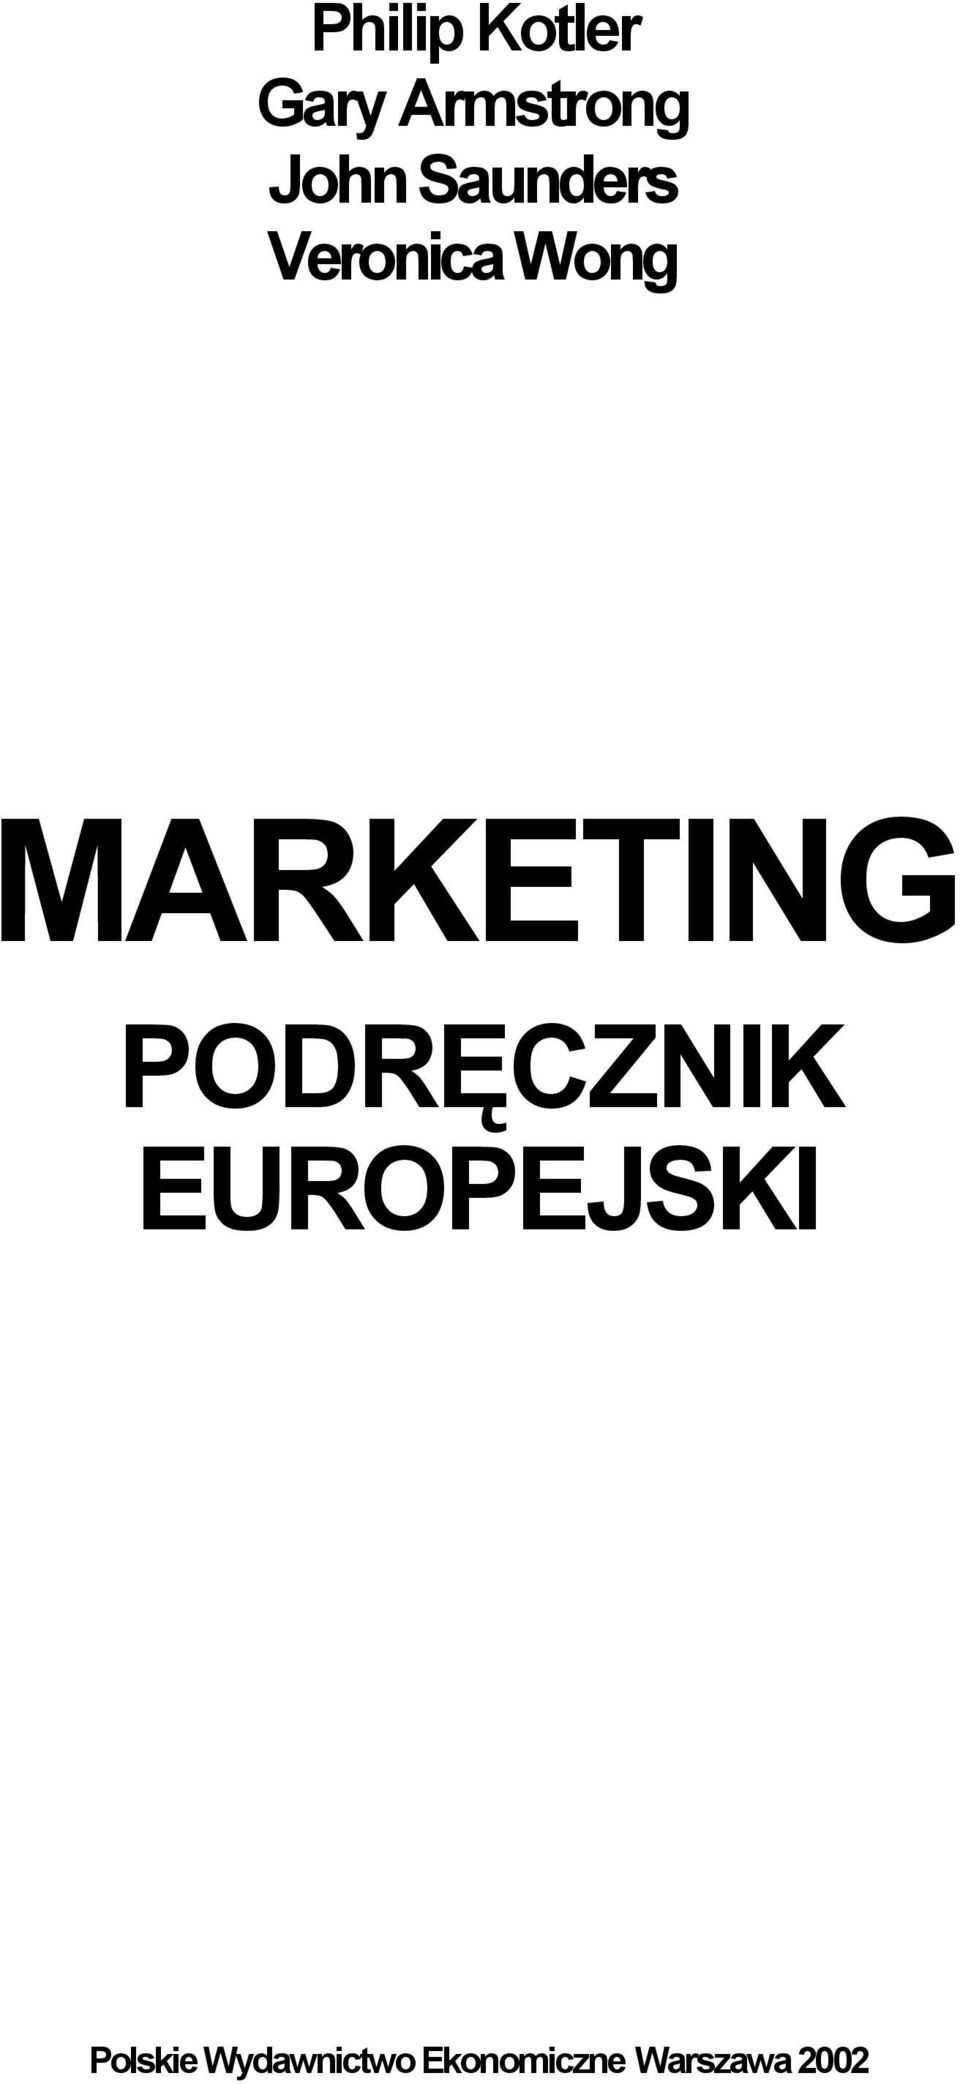 MARKETING PODRĘCZNIK EUROPEJSKI - PDF Darmowe pobieranie